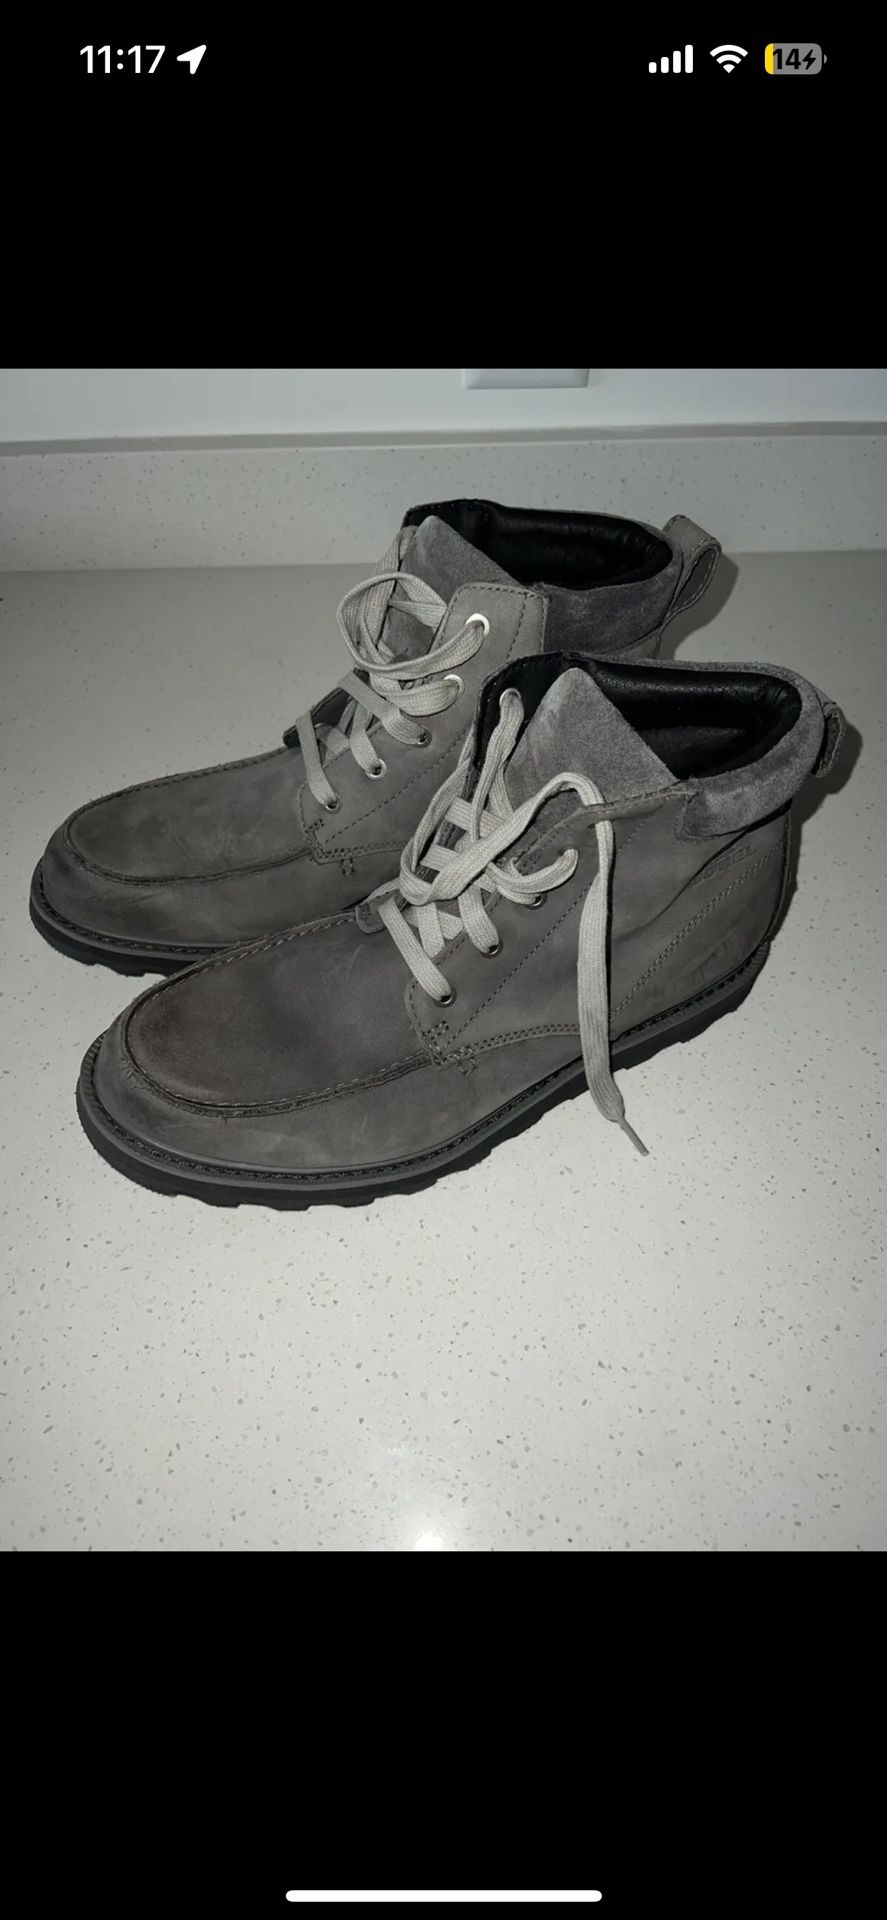 Sorel Waterproof Snow Boots Men’s Size 10